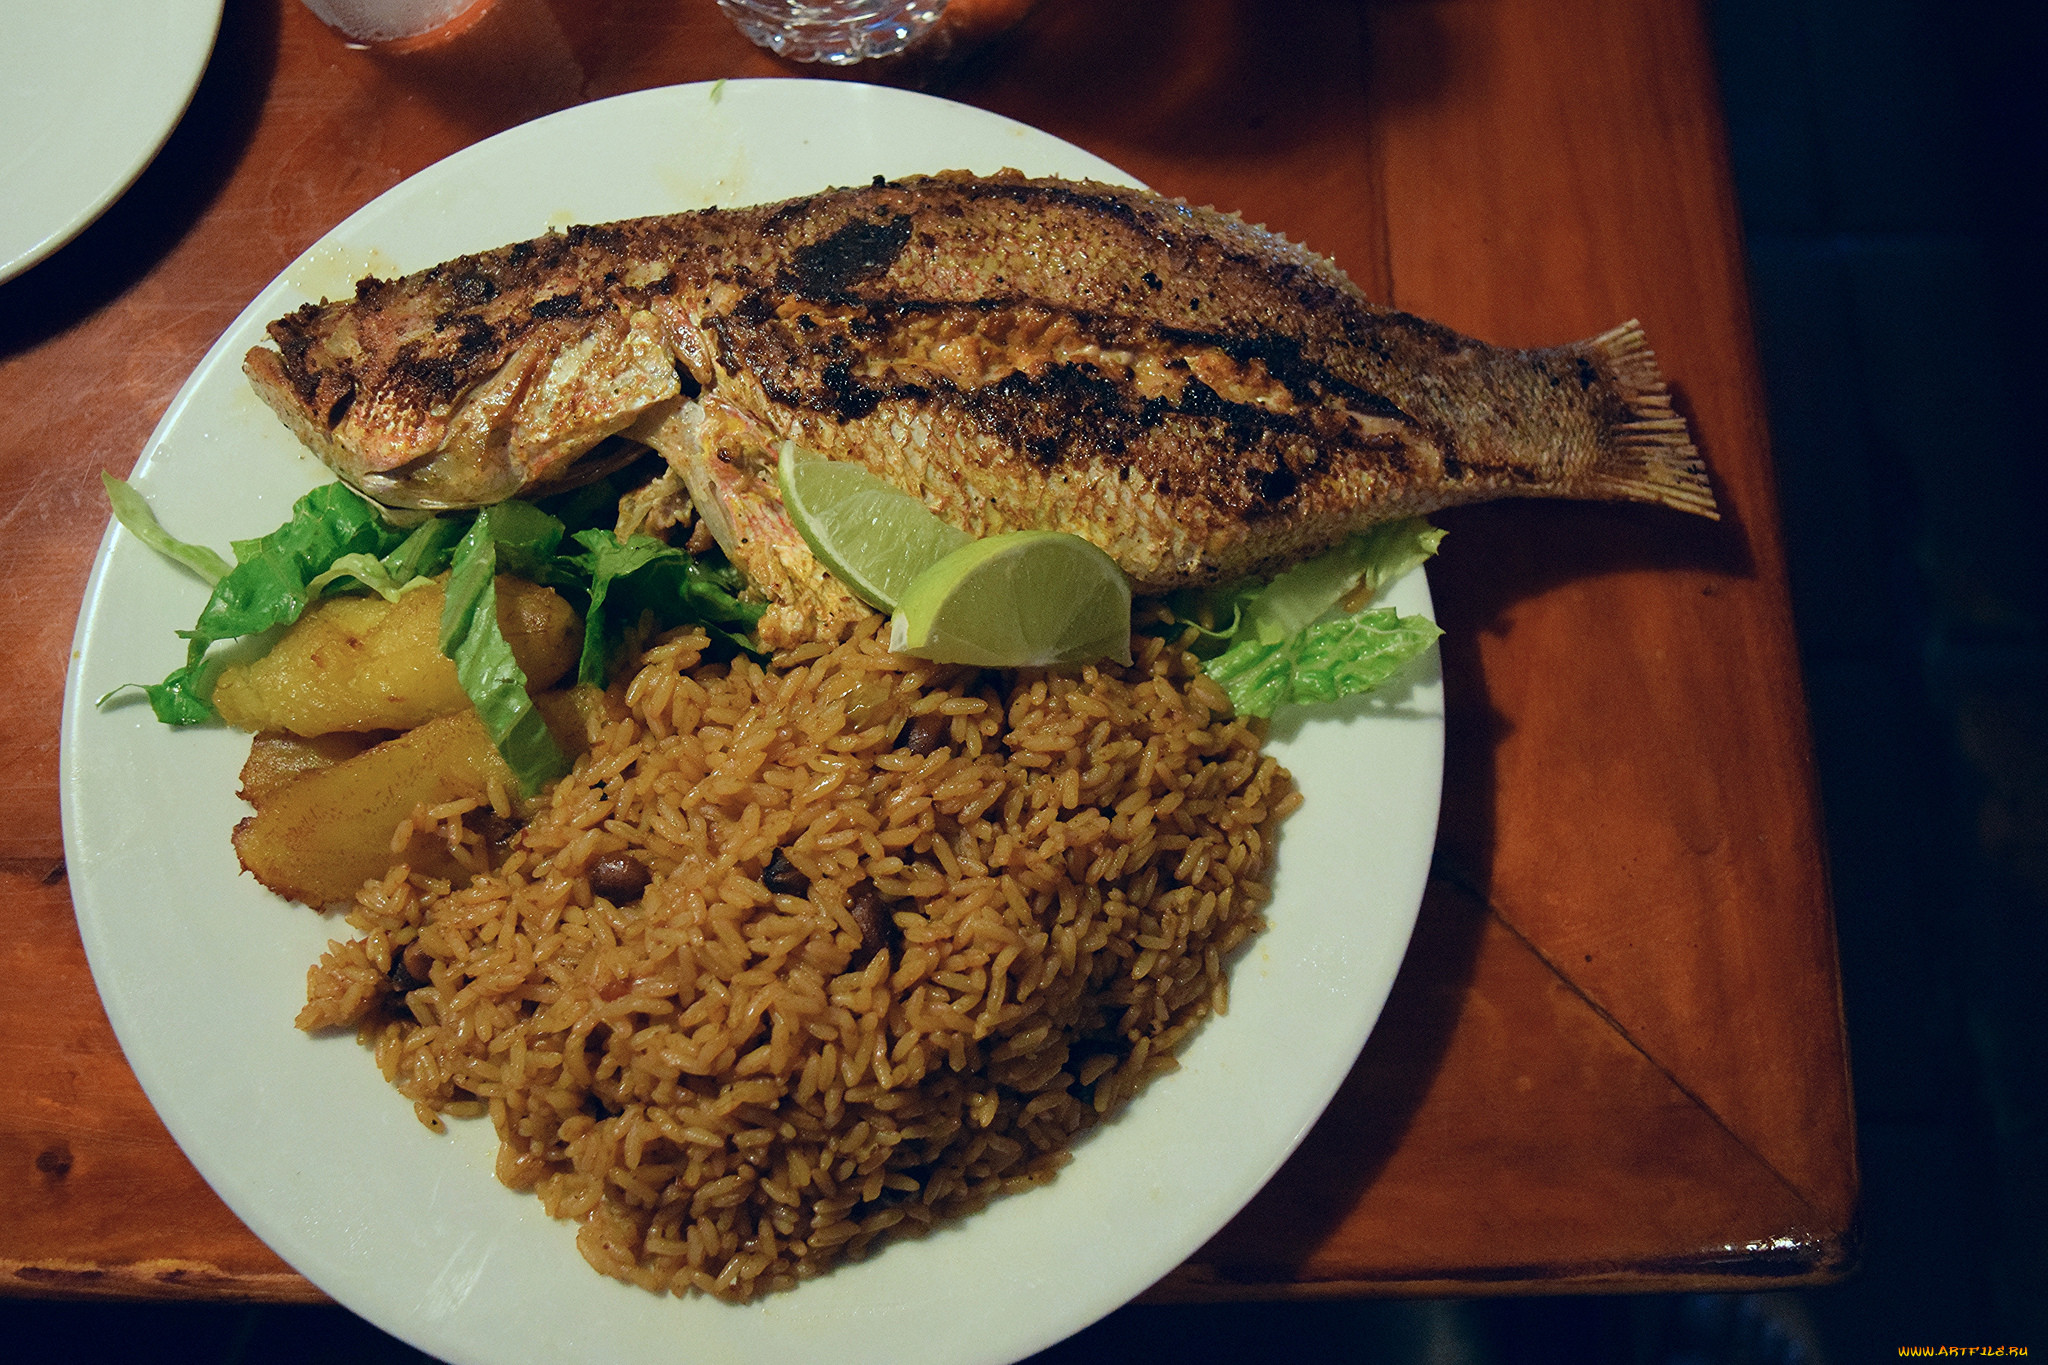 Рис рыба тюмень. Рис с рыбой. Картинка обеда рыба с рисом. Рис и рыба Оренбург. Рыба рис Бакал.